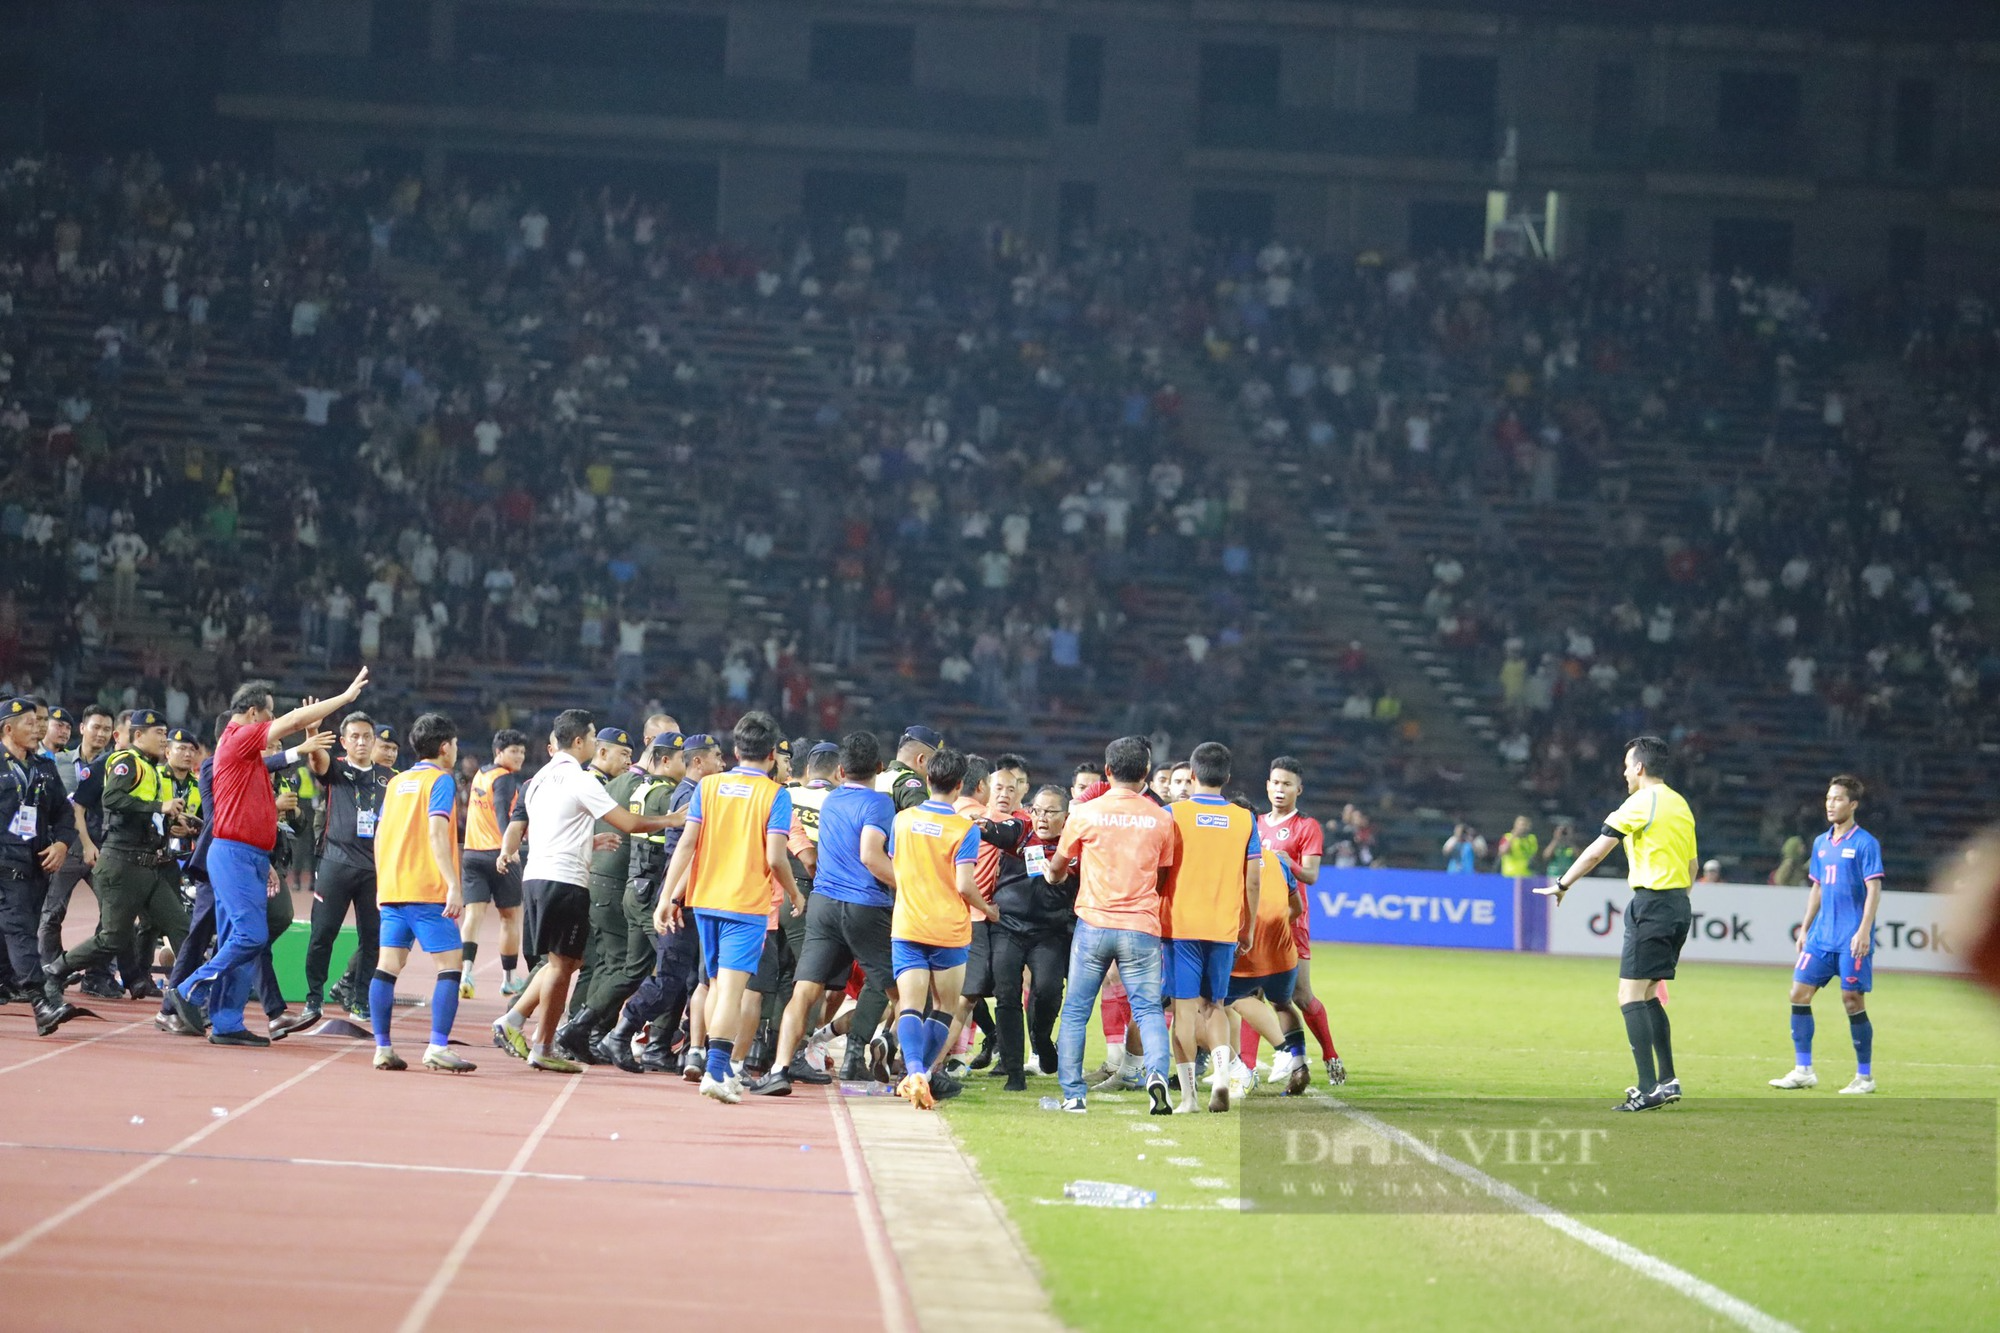 Đánh bại U22 Thái Lan trong trận cầu 6 thẻ đỏ, U22 Indonesia giành HCV SEA Games 32 - Ảnh 4.